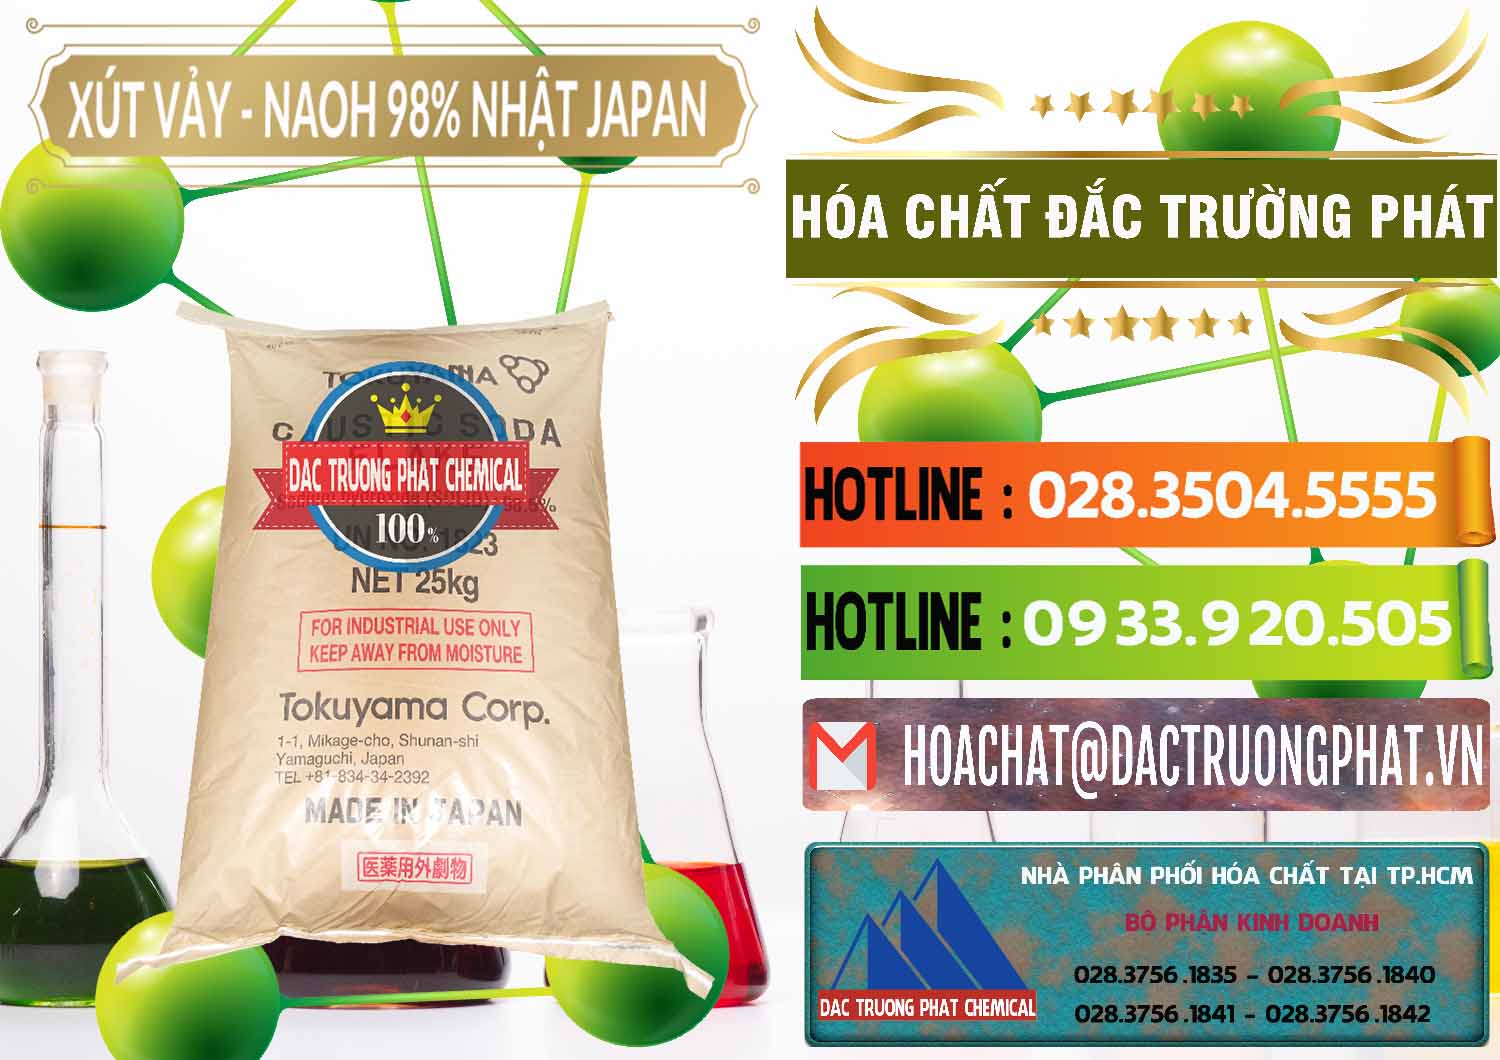 Cty chuyên cung ứng & bán Xút Vảy - NaOH Vảy 98% Tokuyama Nhật Bản Japan - 0173 - Nơi chuyên cung ứng - phân phối hóa chất tại TP.HCM - cungcaphoachat.com.vn